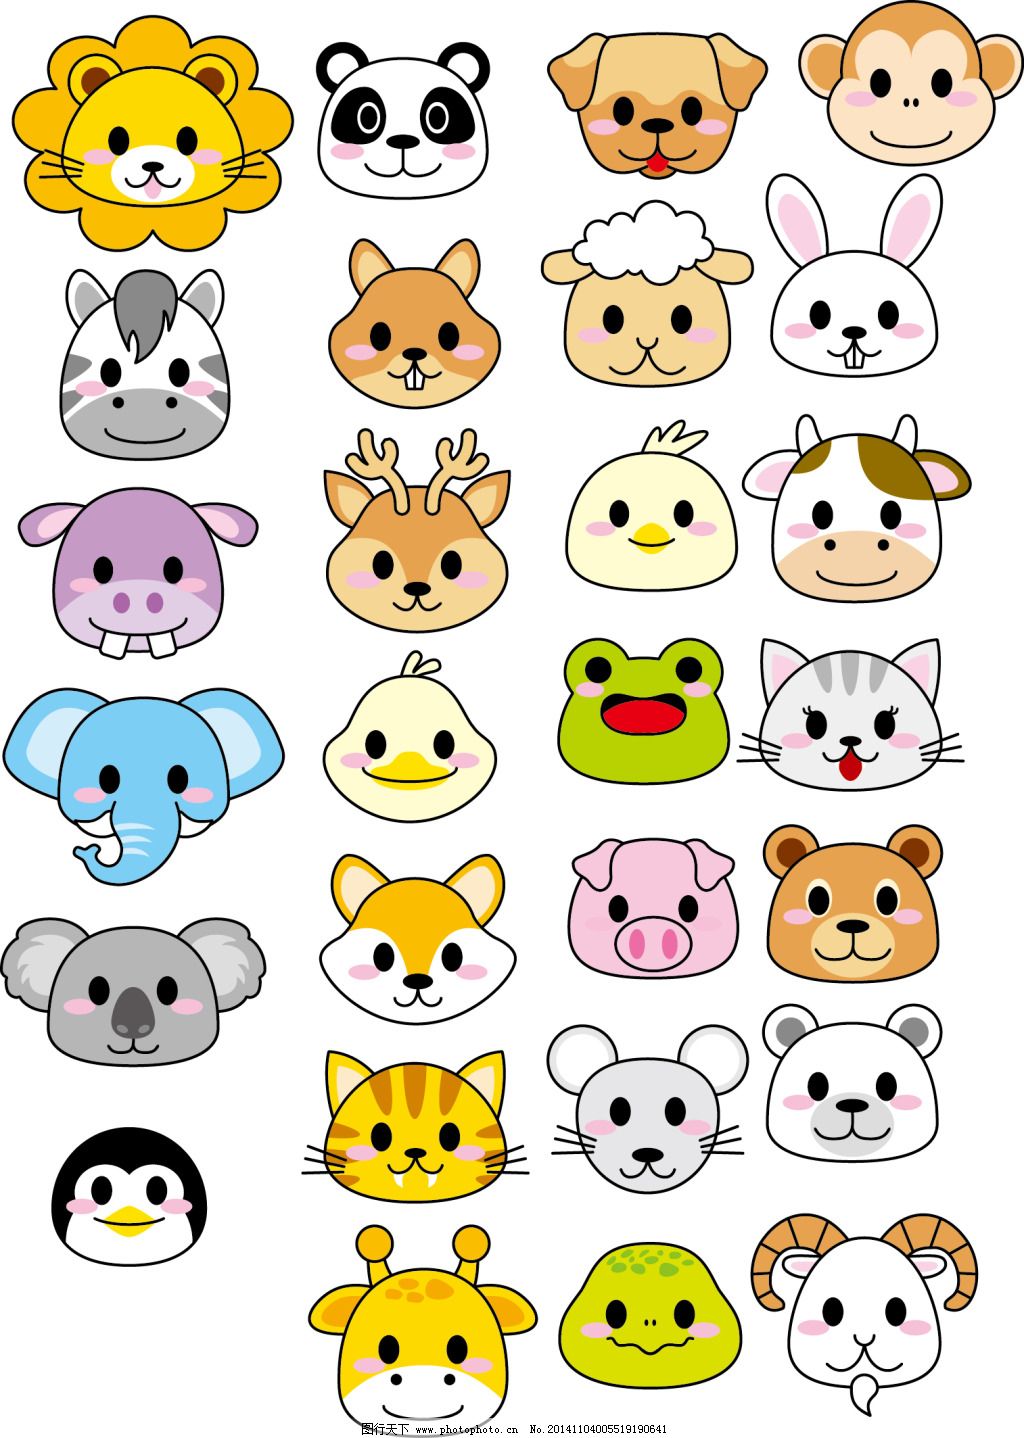 多款可爱卡通动物头像设计_素材公社_tooopen.com